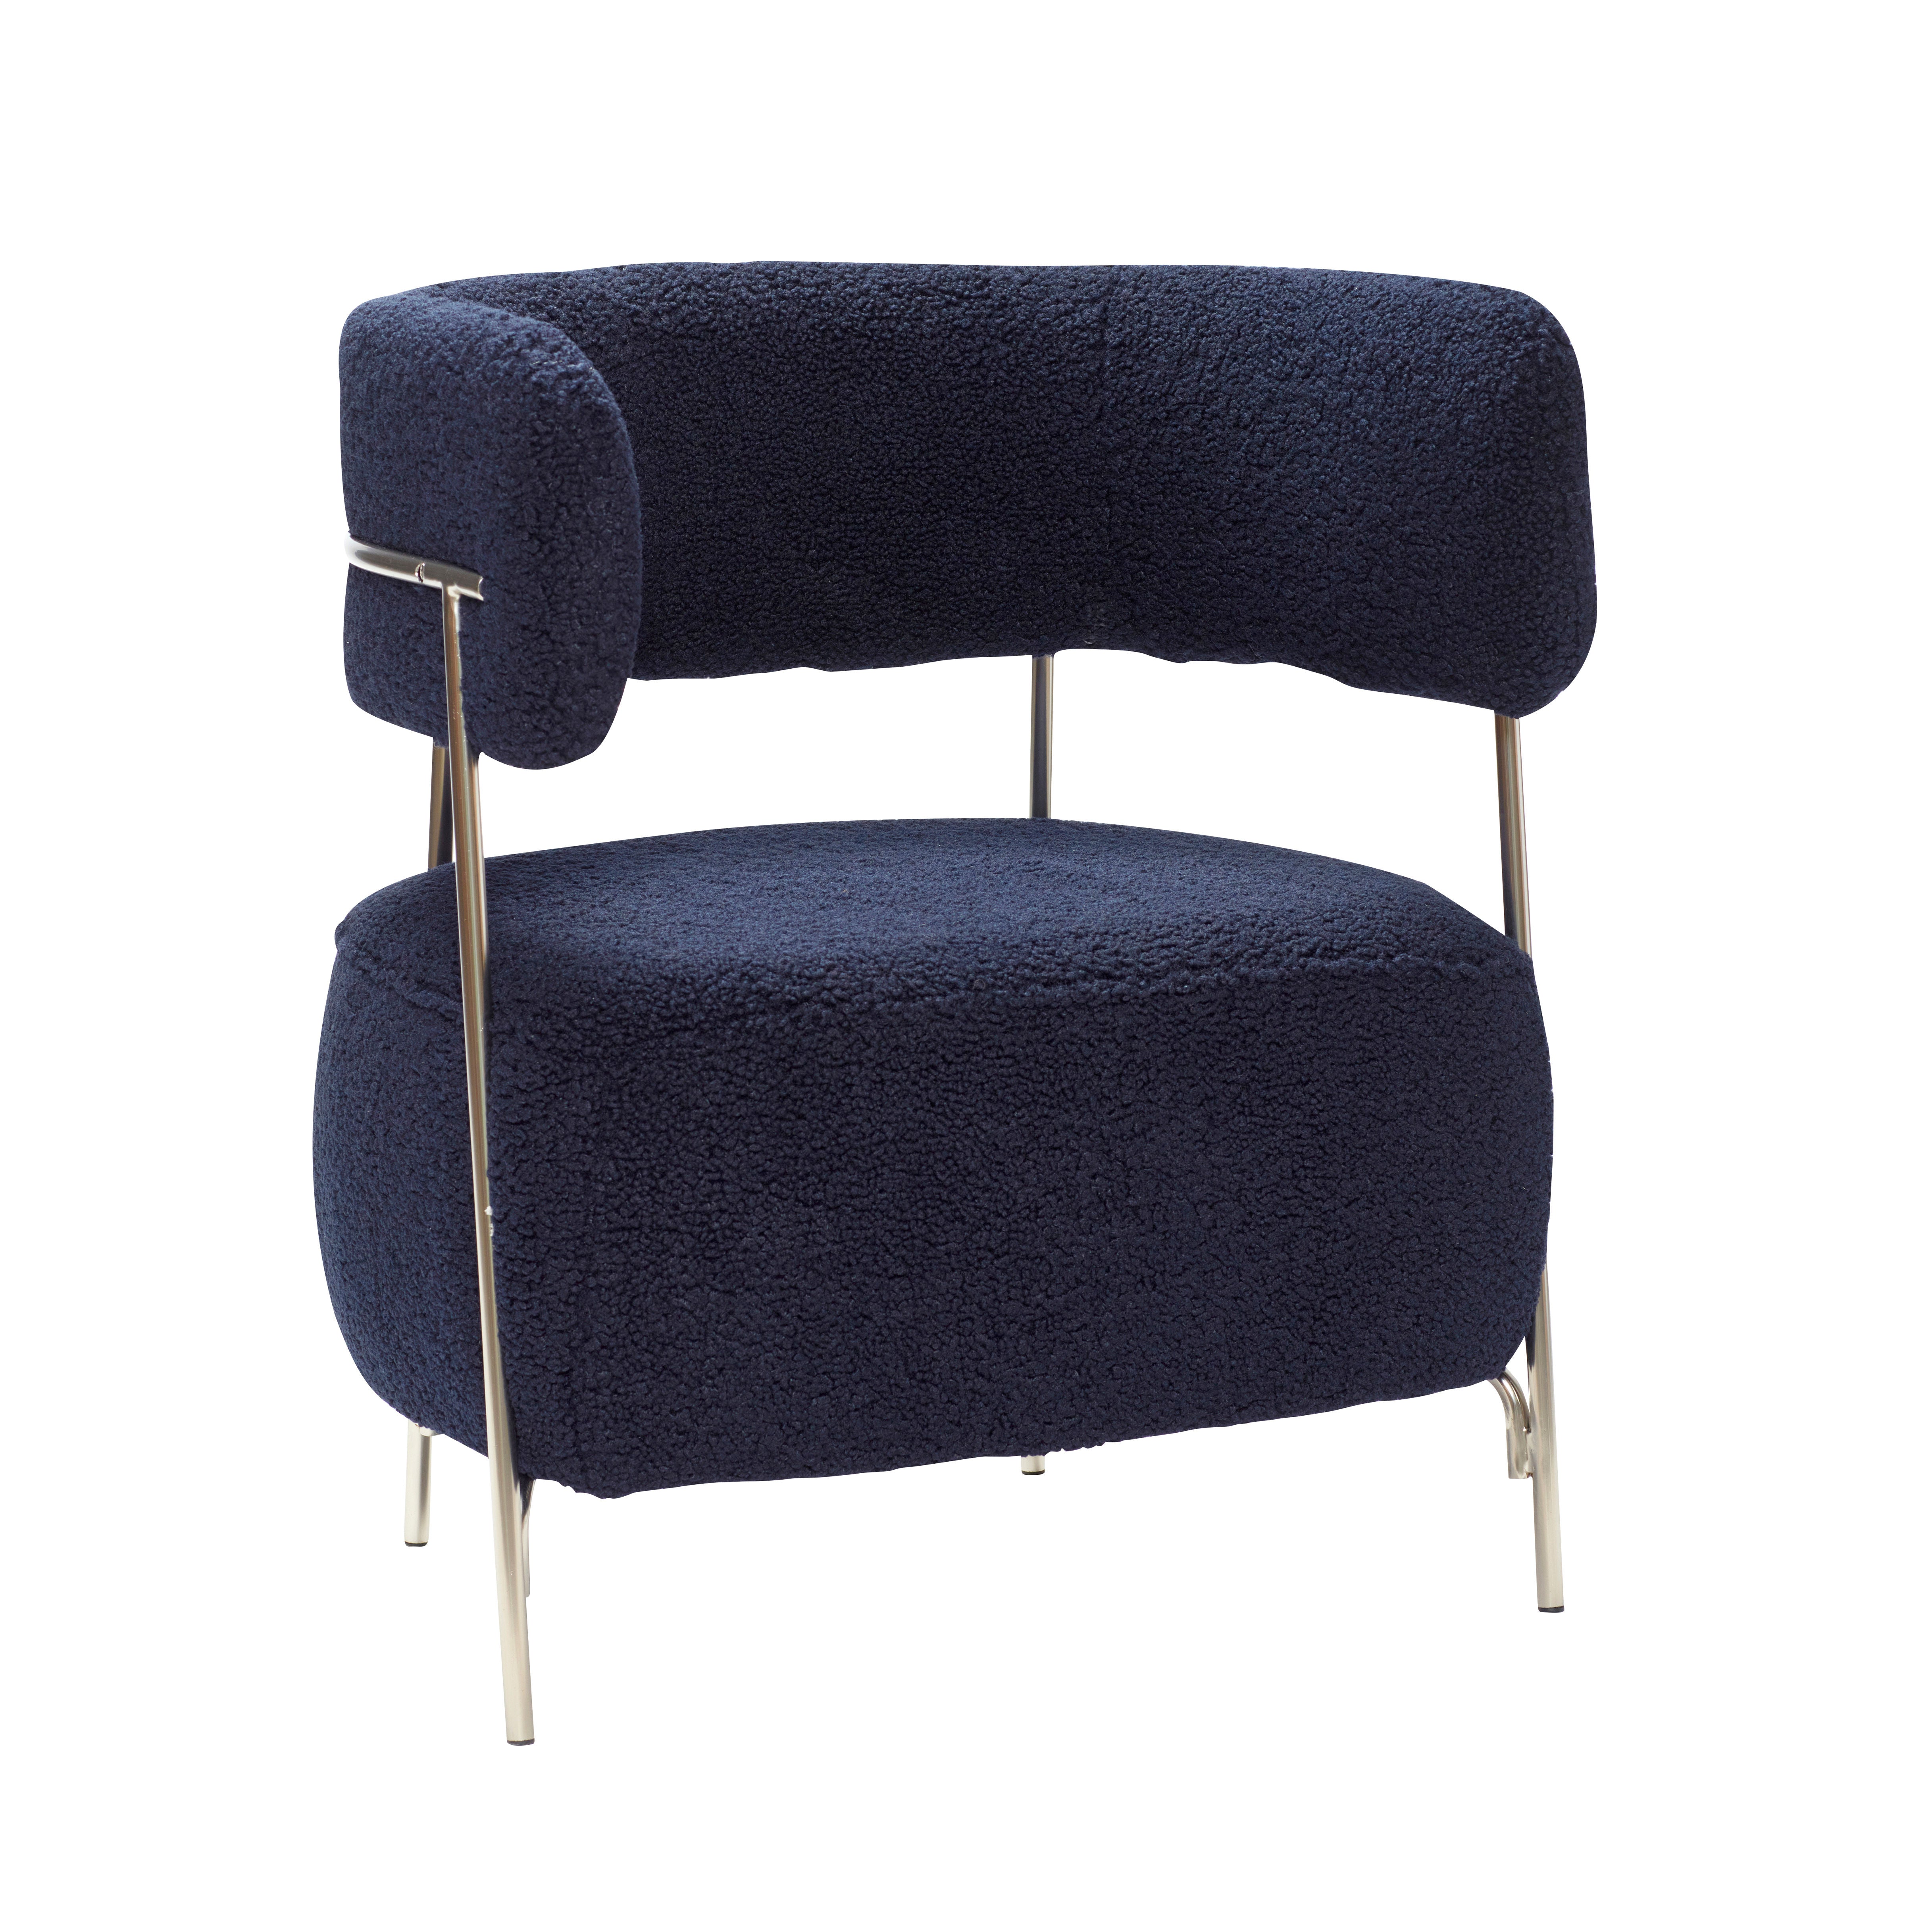 Der Hübsch Teddy Loungestuhl in Blau bietet Komfort und Stil mit seinem modernen Design und robusten Materialien